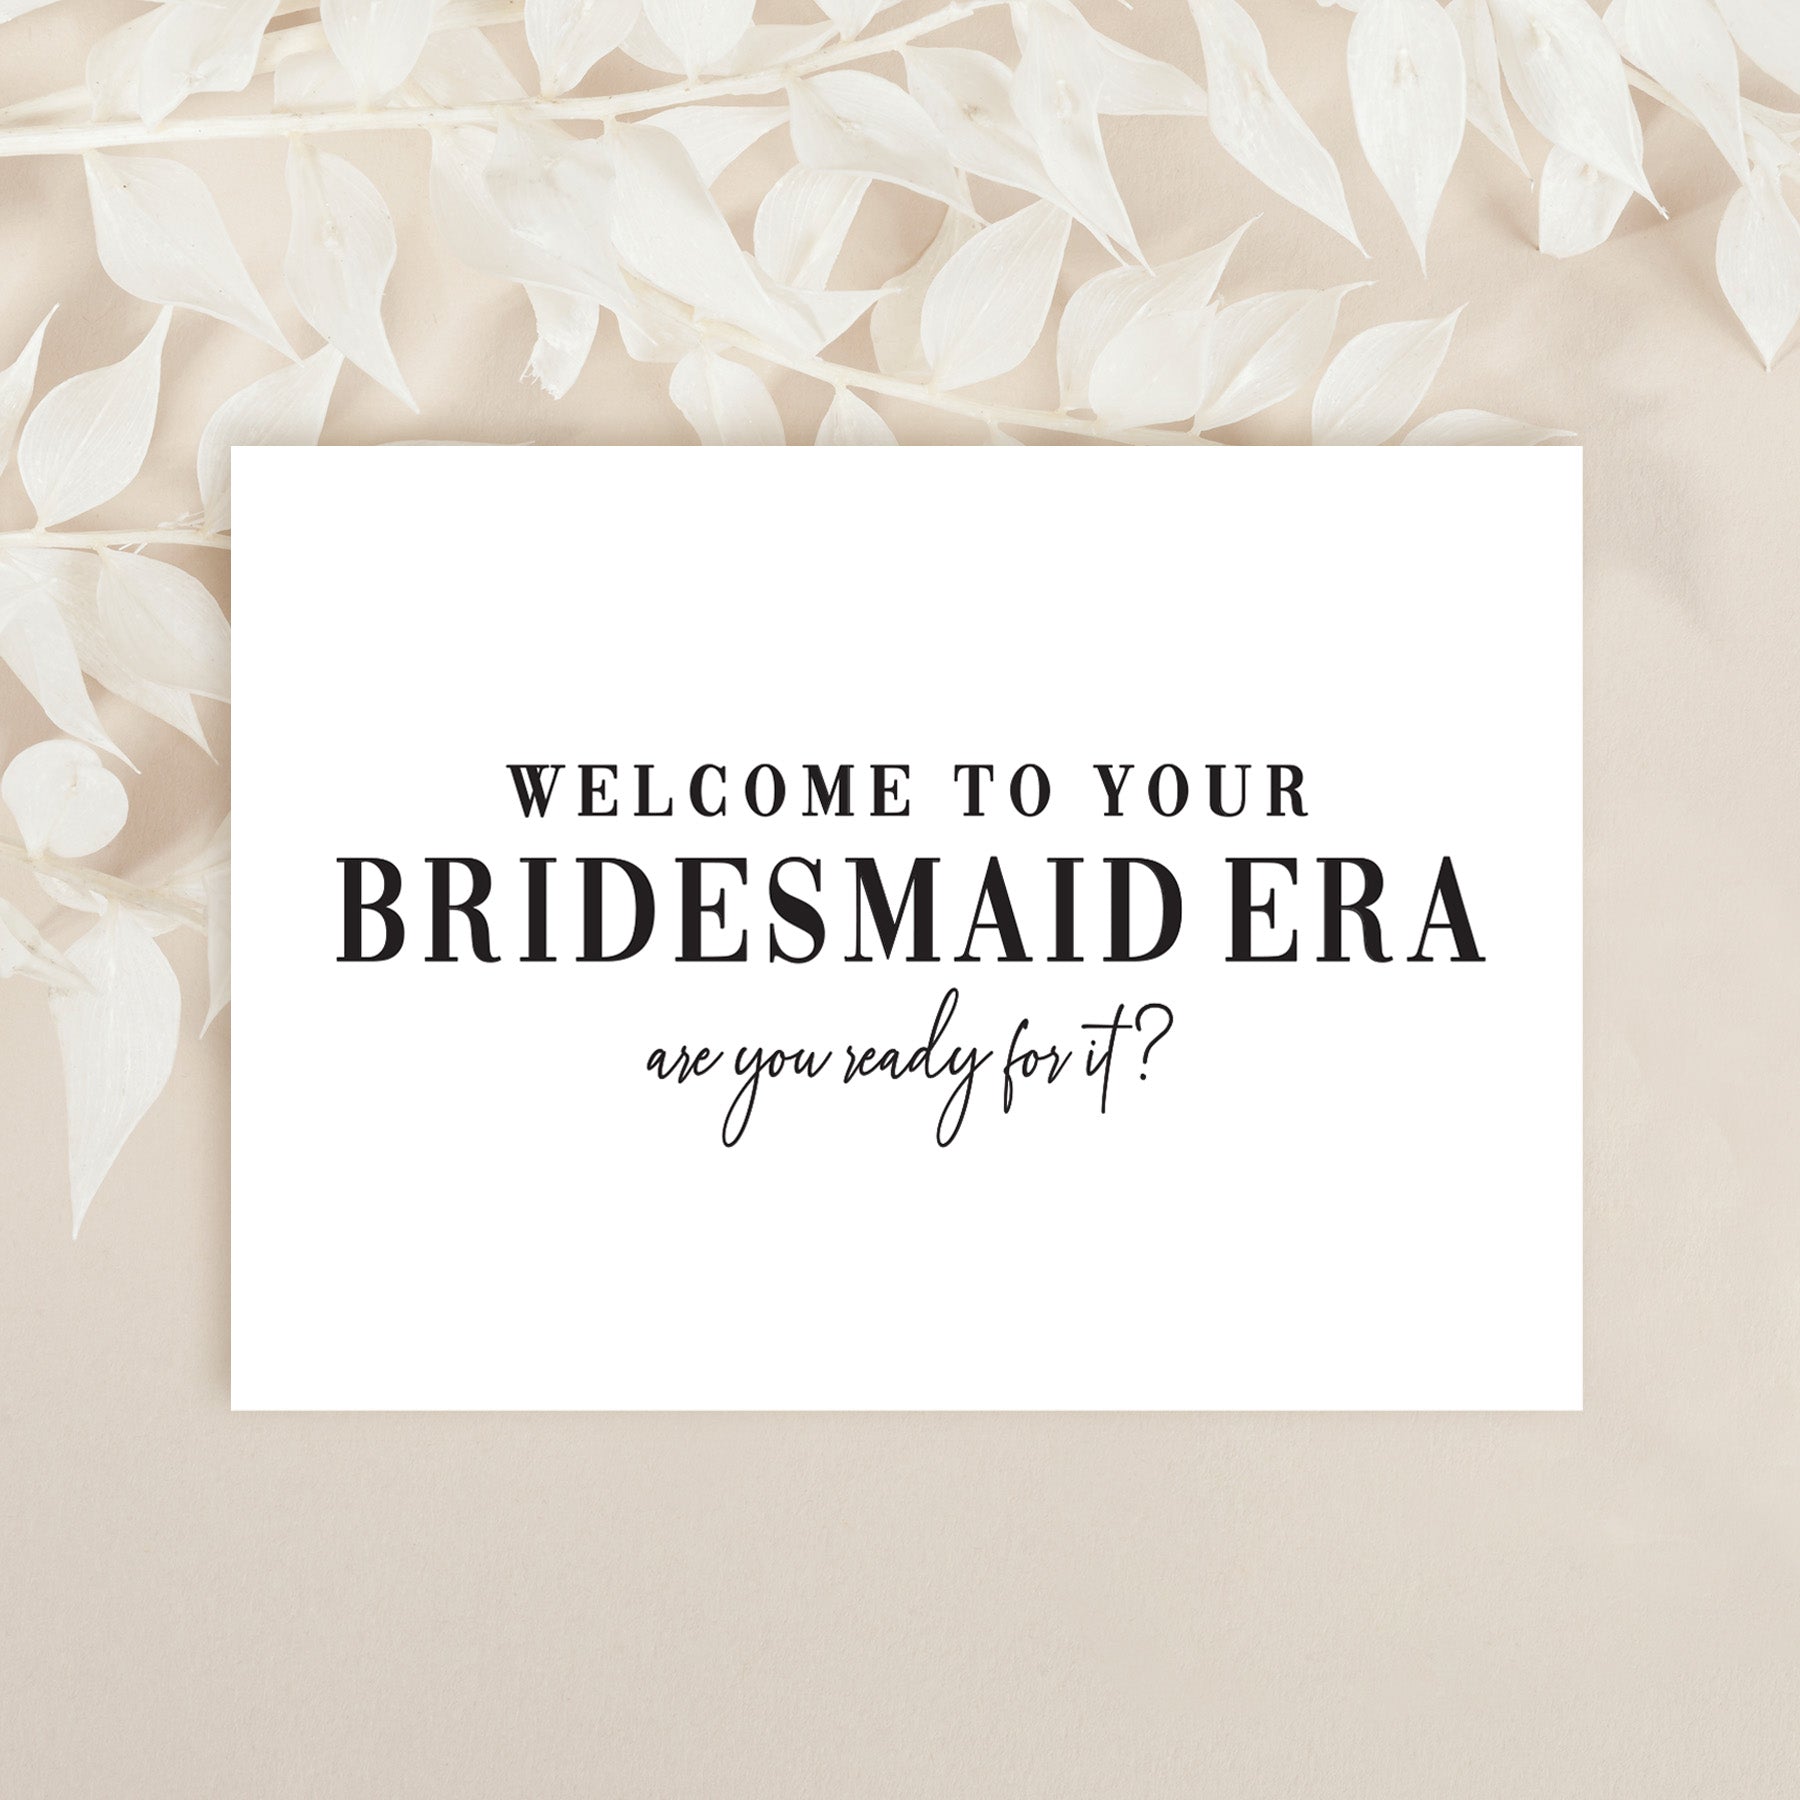 Bridesmaid Era | Bridesmaid Proposal Card